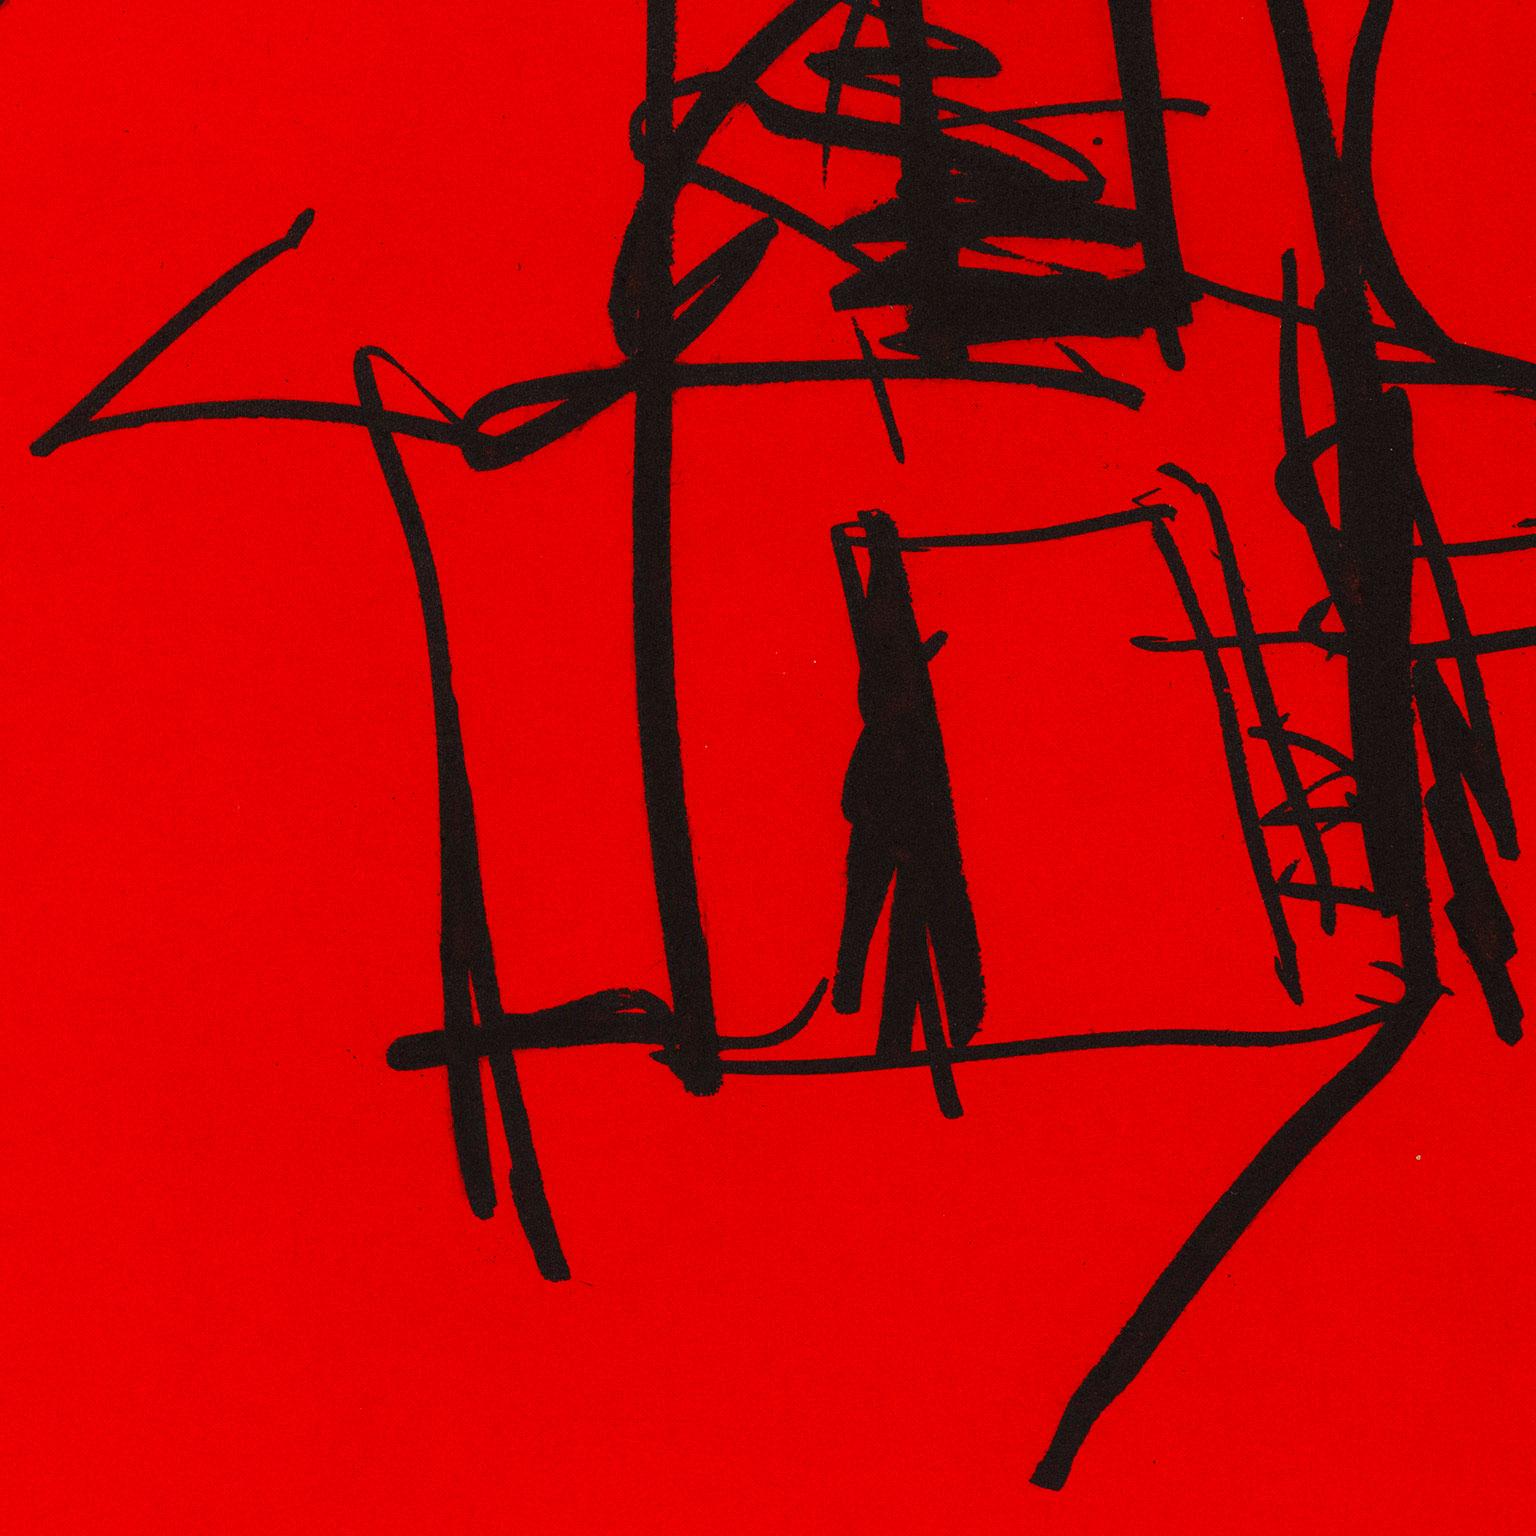 Robert Motherwell (1915-1991), aux côtés de Jackson Pollock, Mark Rothko et Willem de Kooning, a formé le quatuor de peintres abstraits américains qui a radicalement défini l'abstraction et établi la ville de New York comme centre du monde de l'art